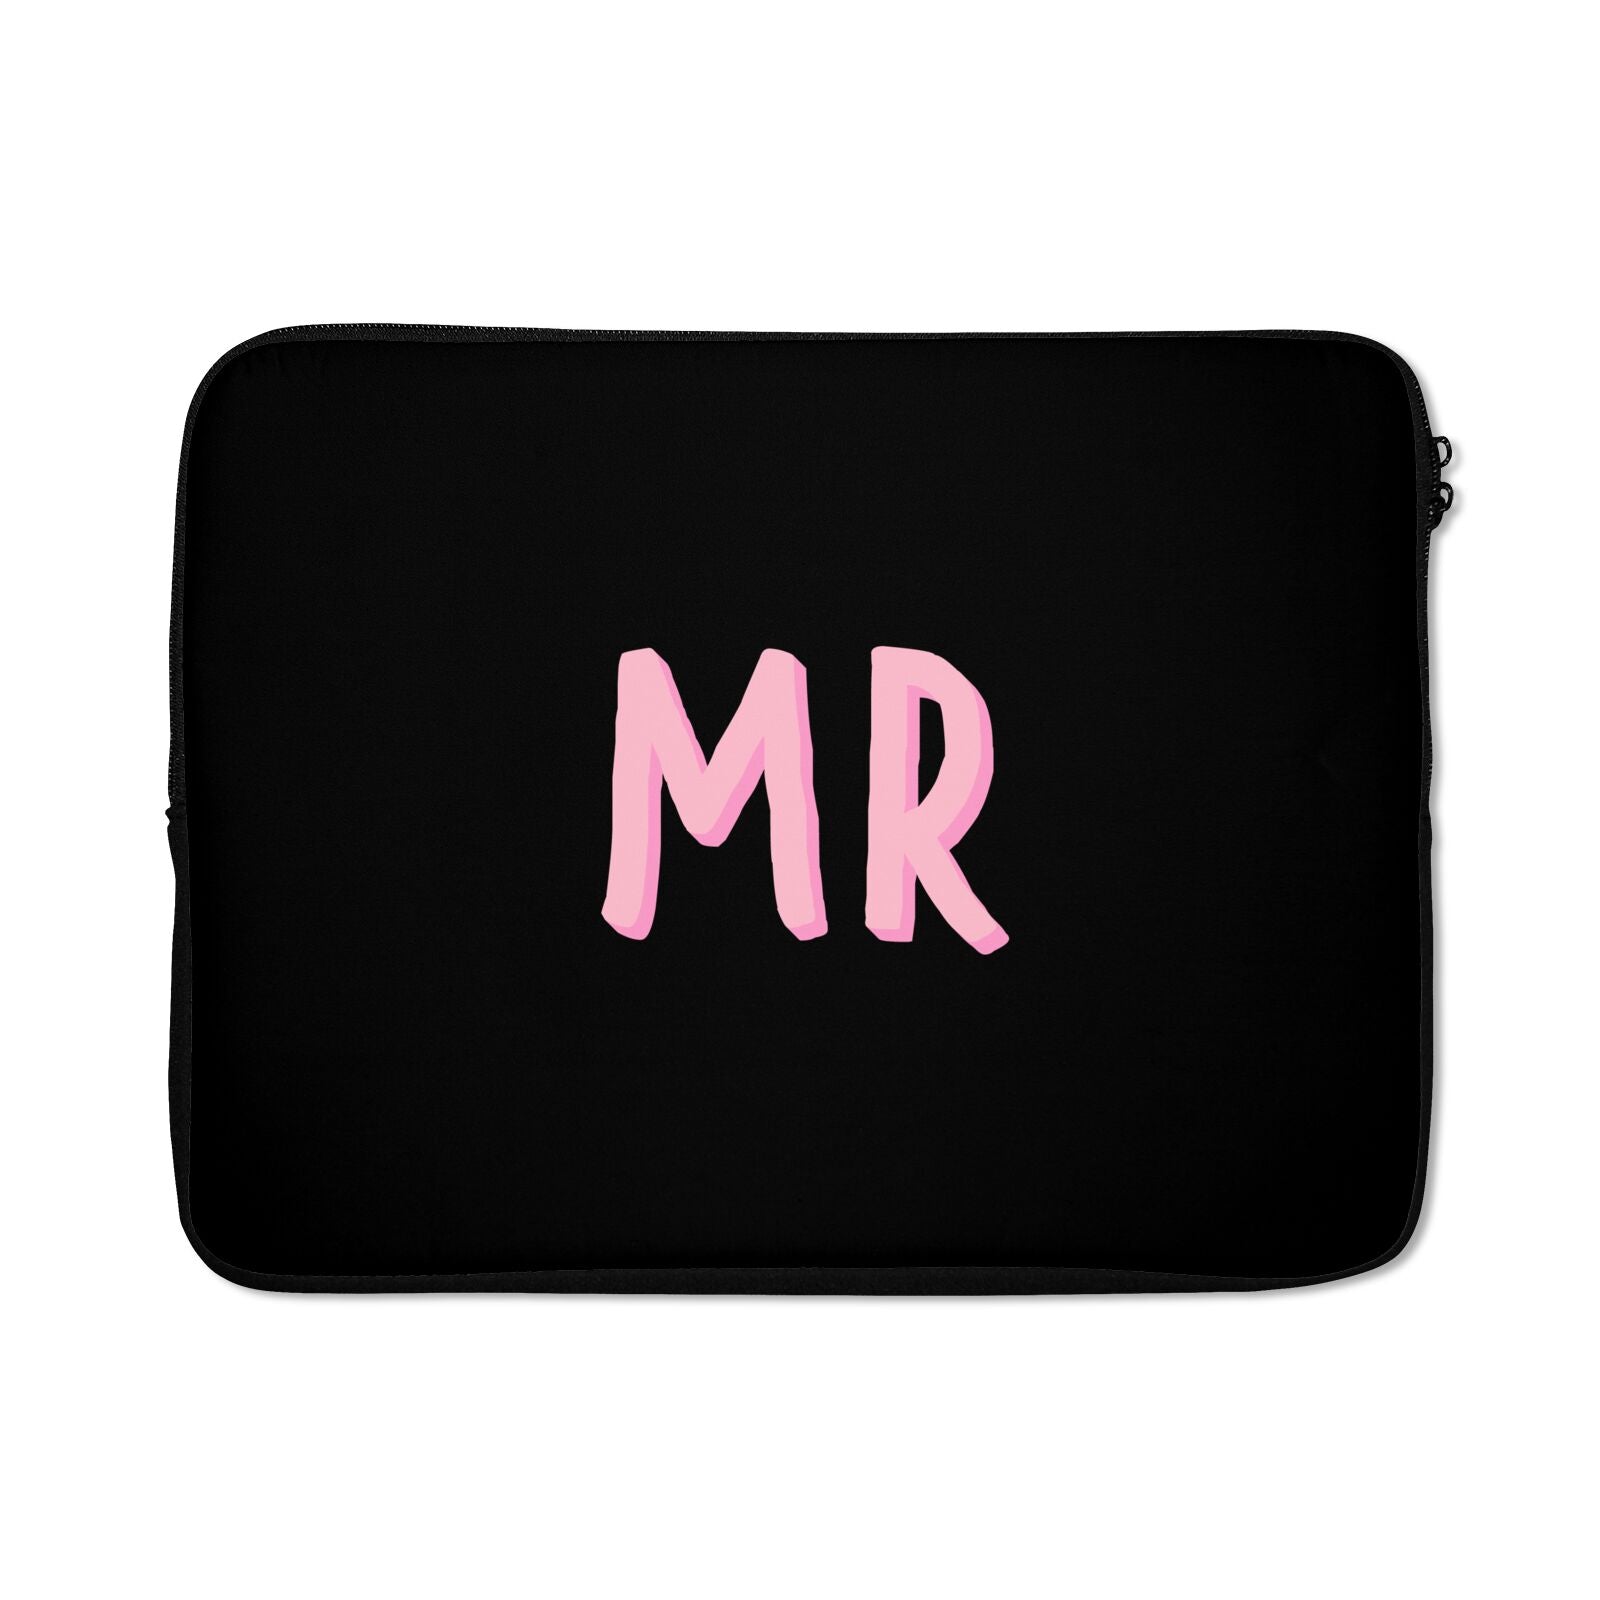 Mr Laptop Bag with Zip